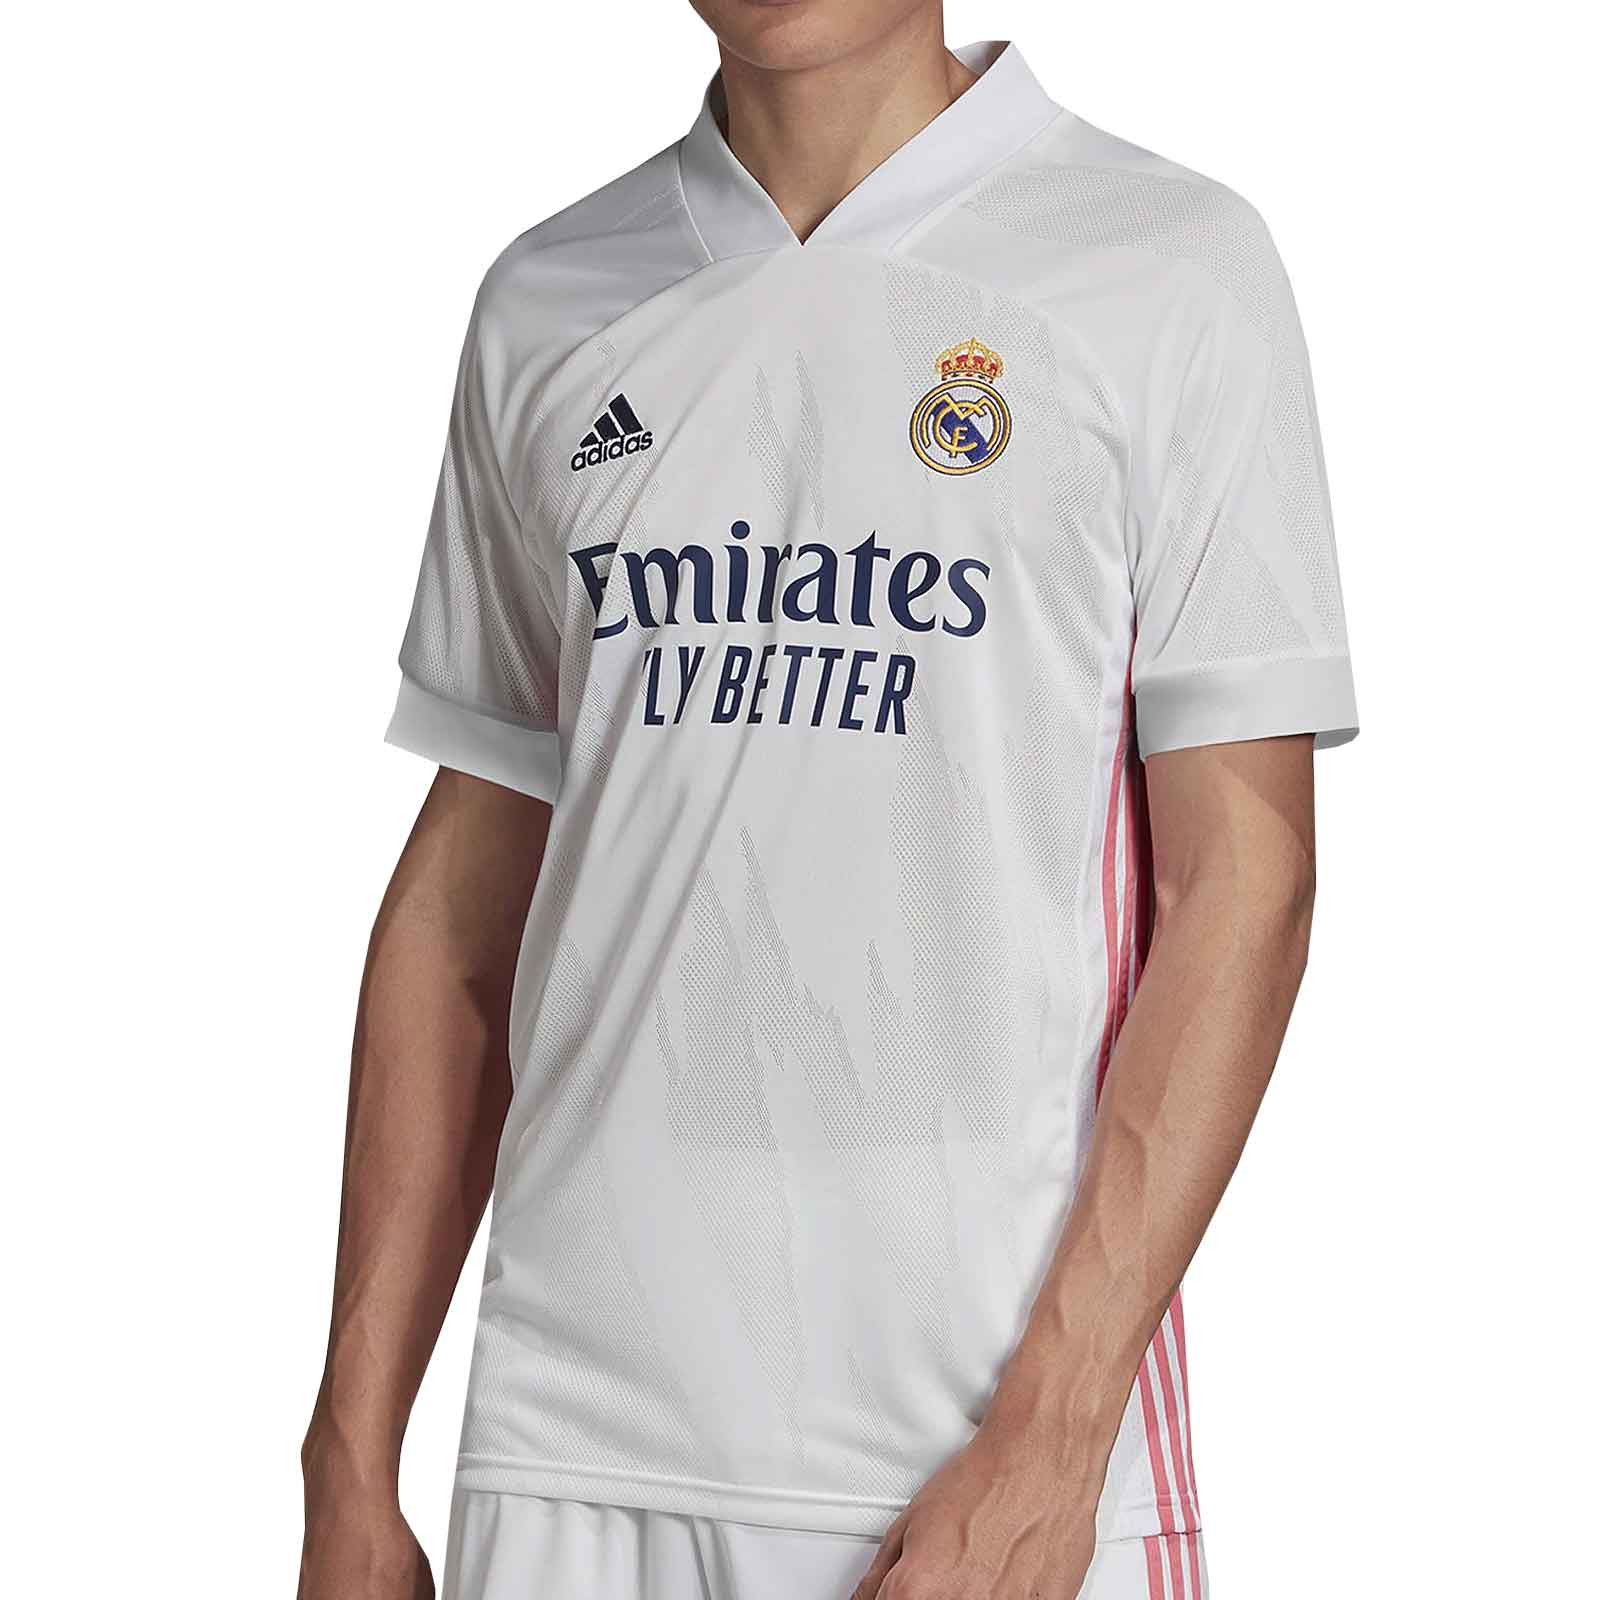 Camiseta adidas Real Madrid 2020 2021 futbolmania